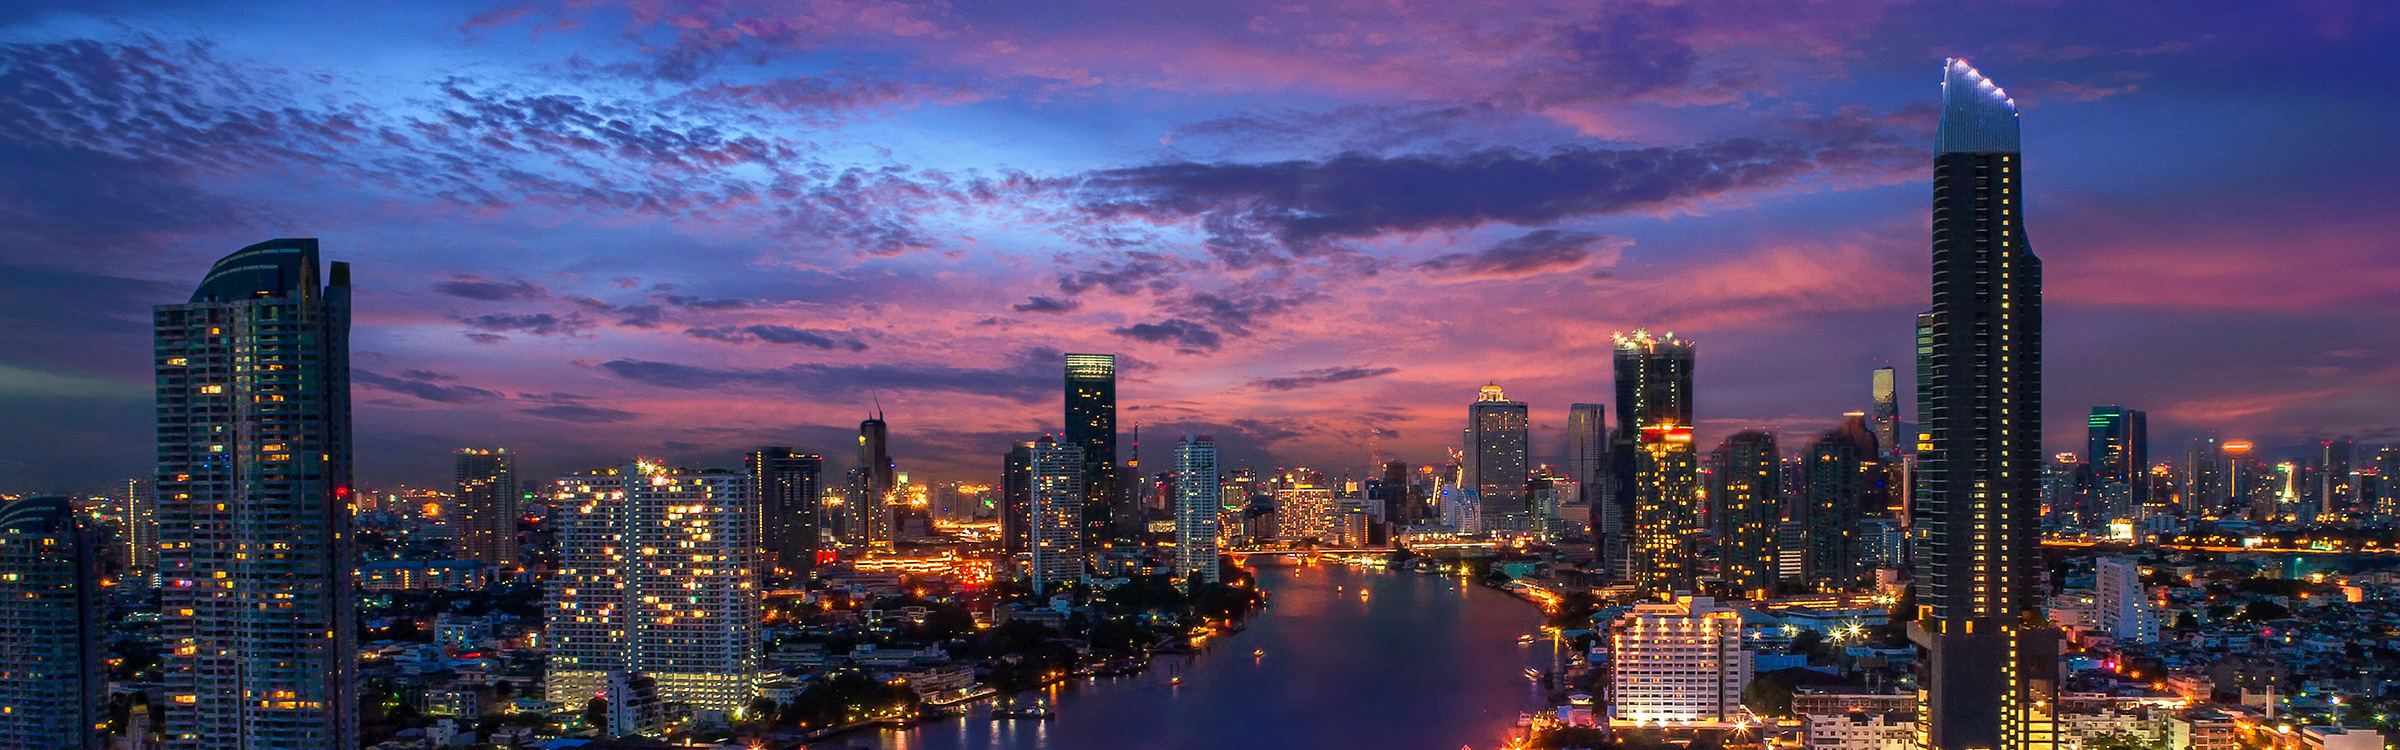 BangkokOffice Photo